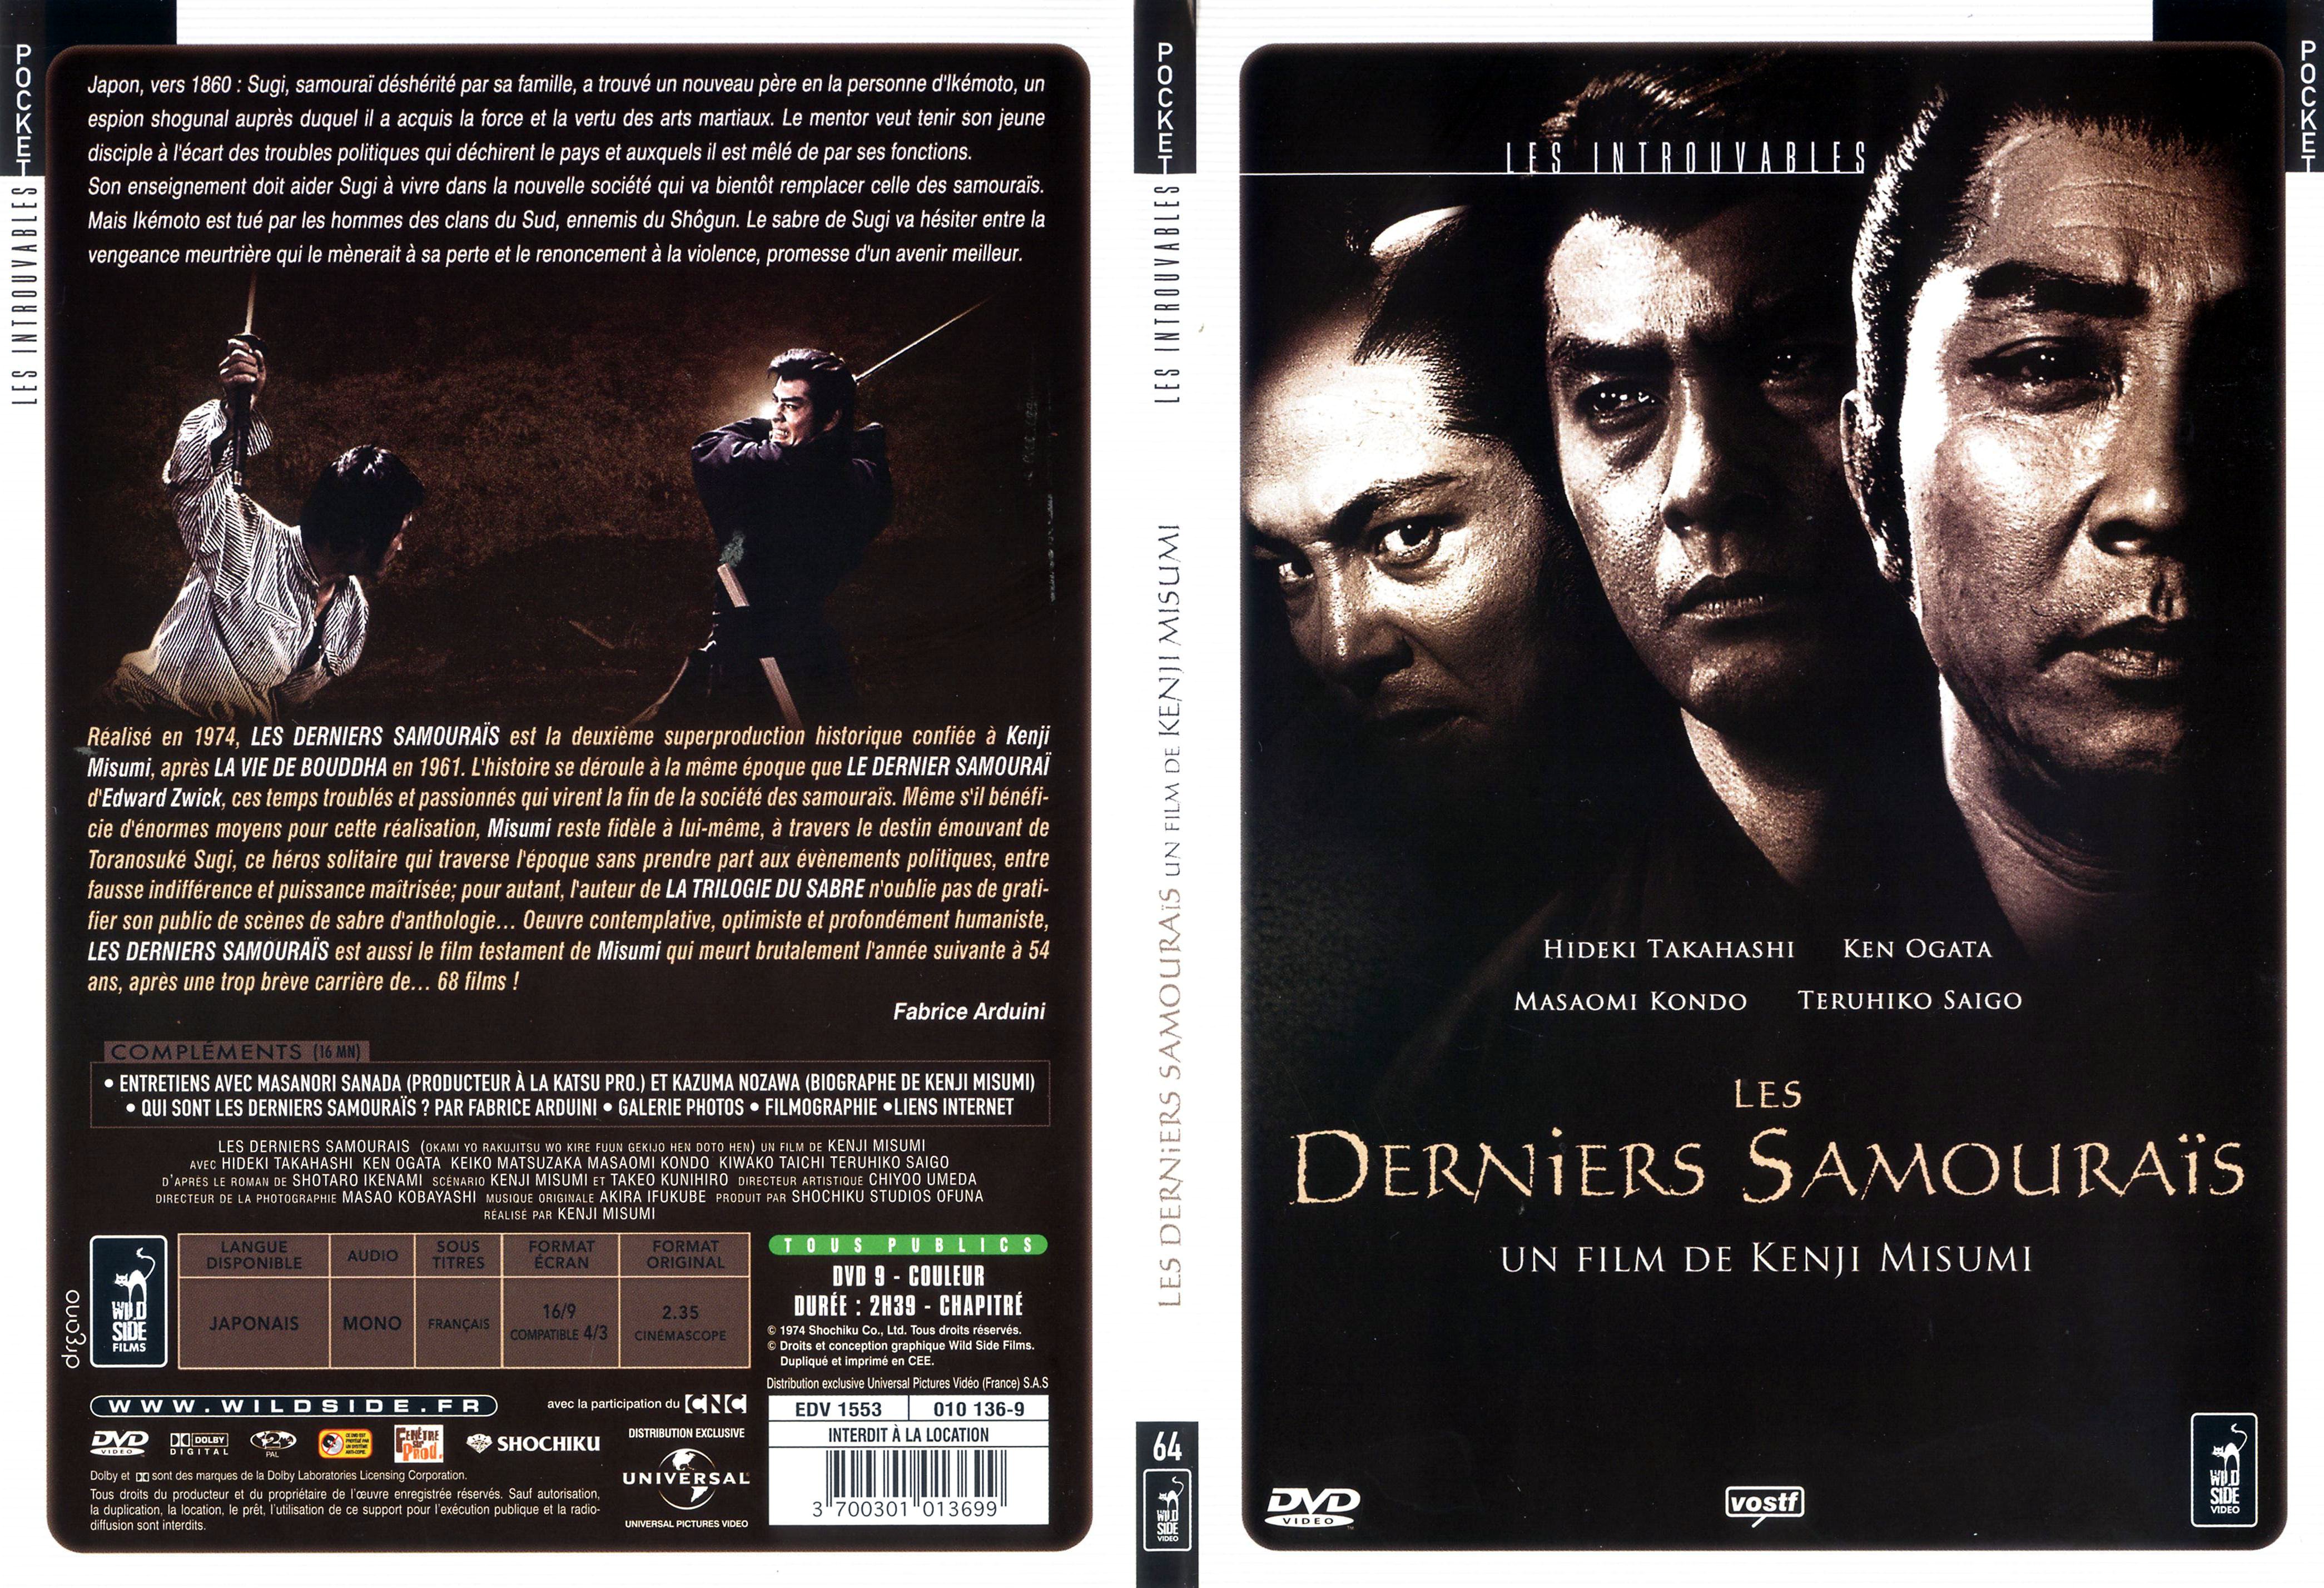 Jaquette DVD Les derniers samourais - SLIM